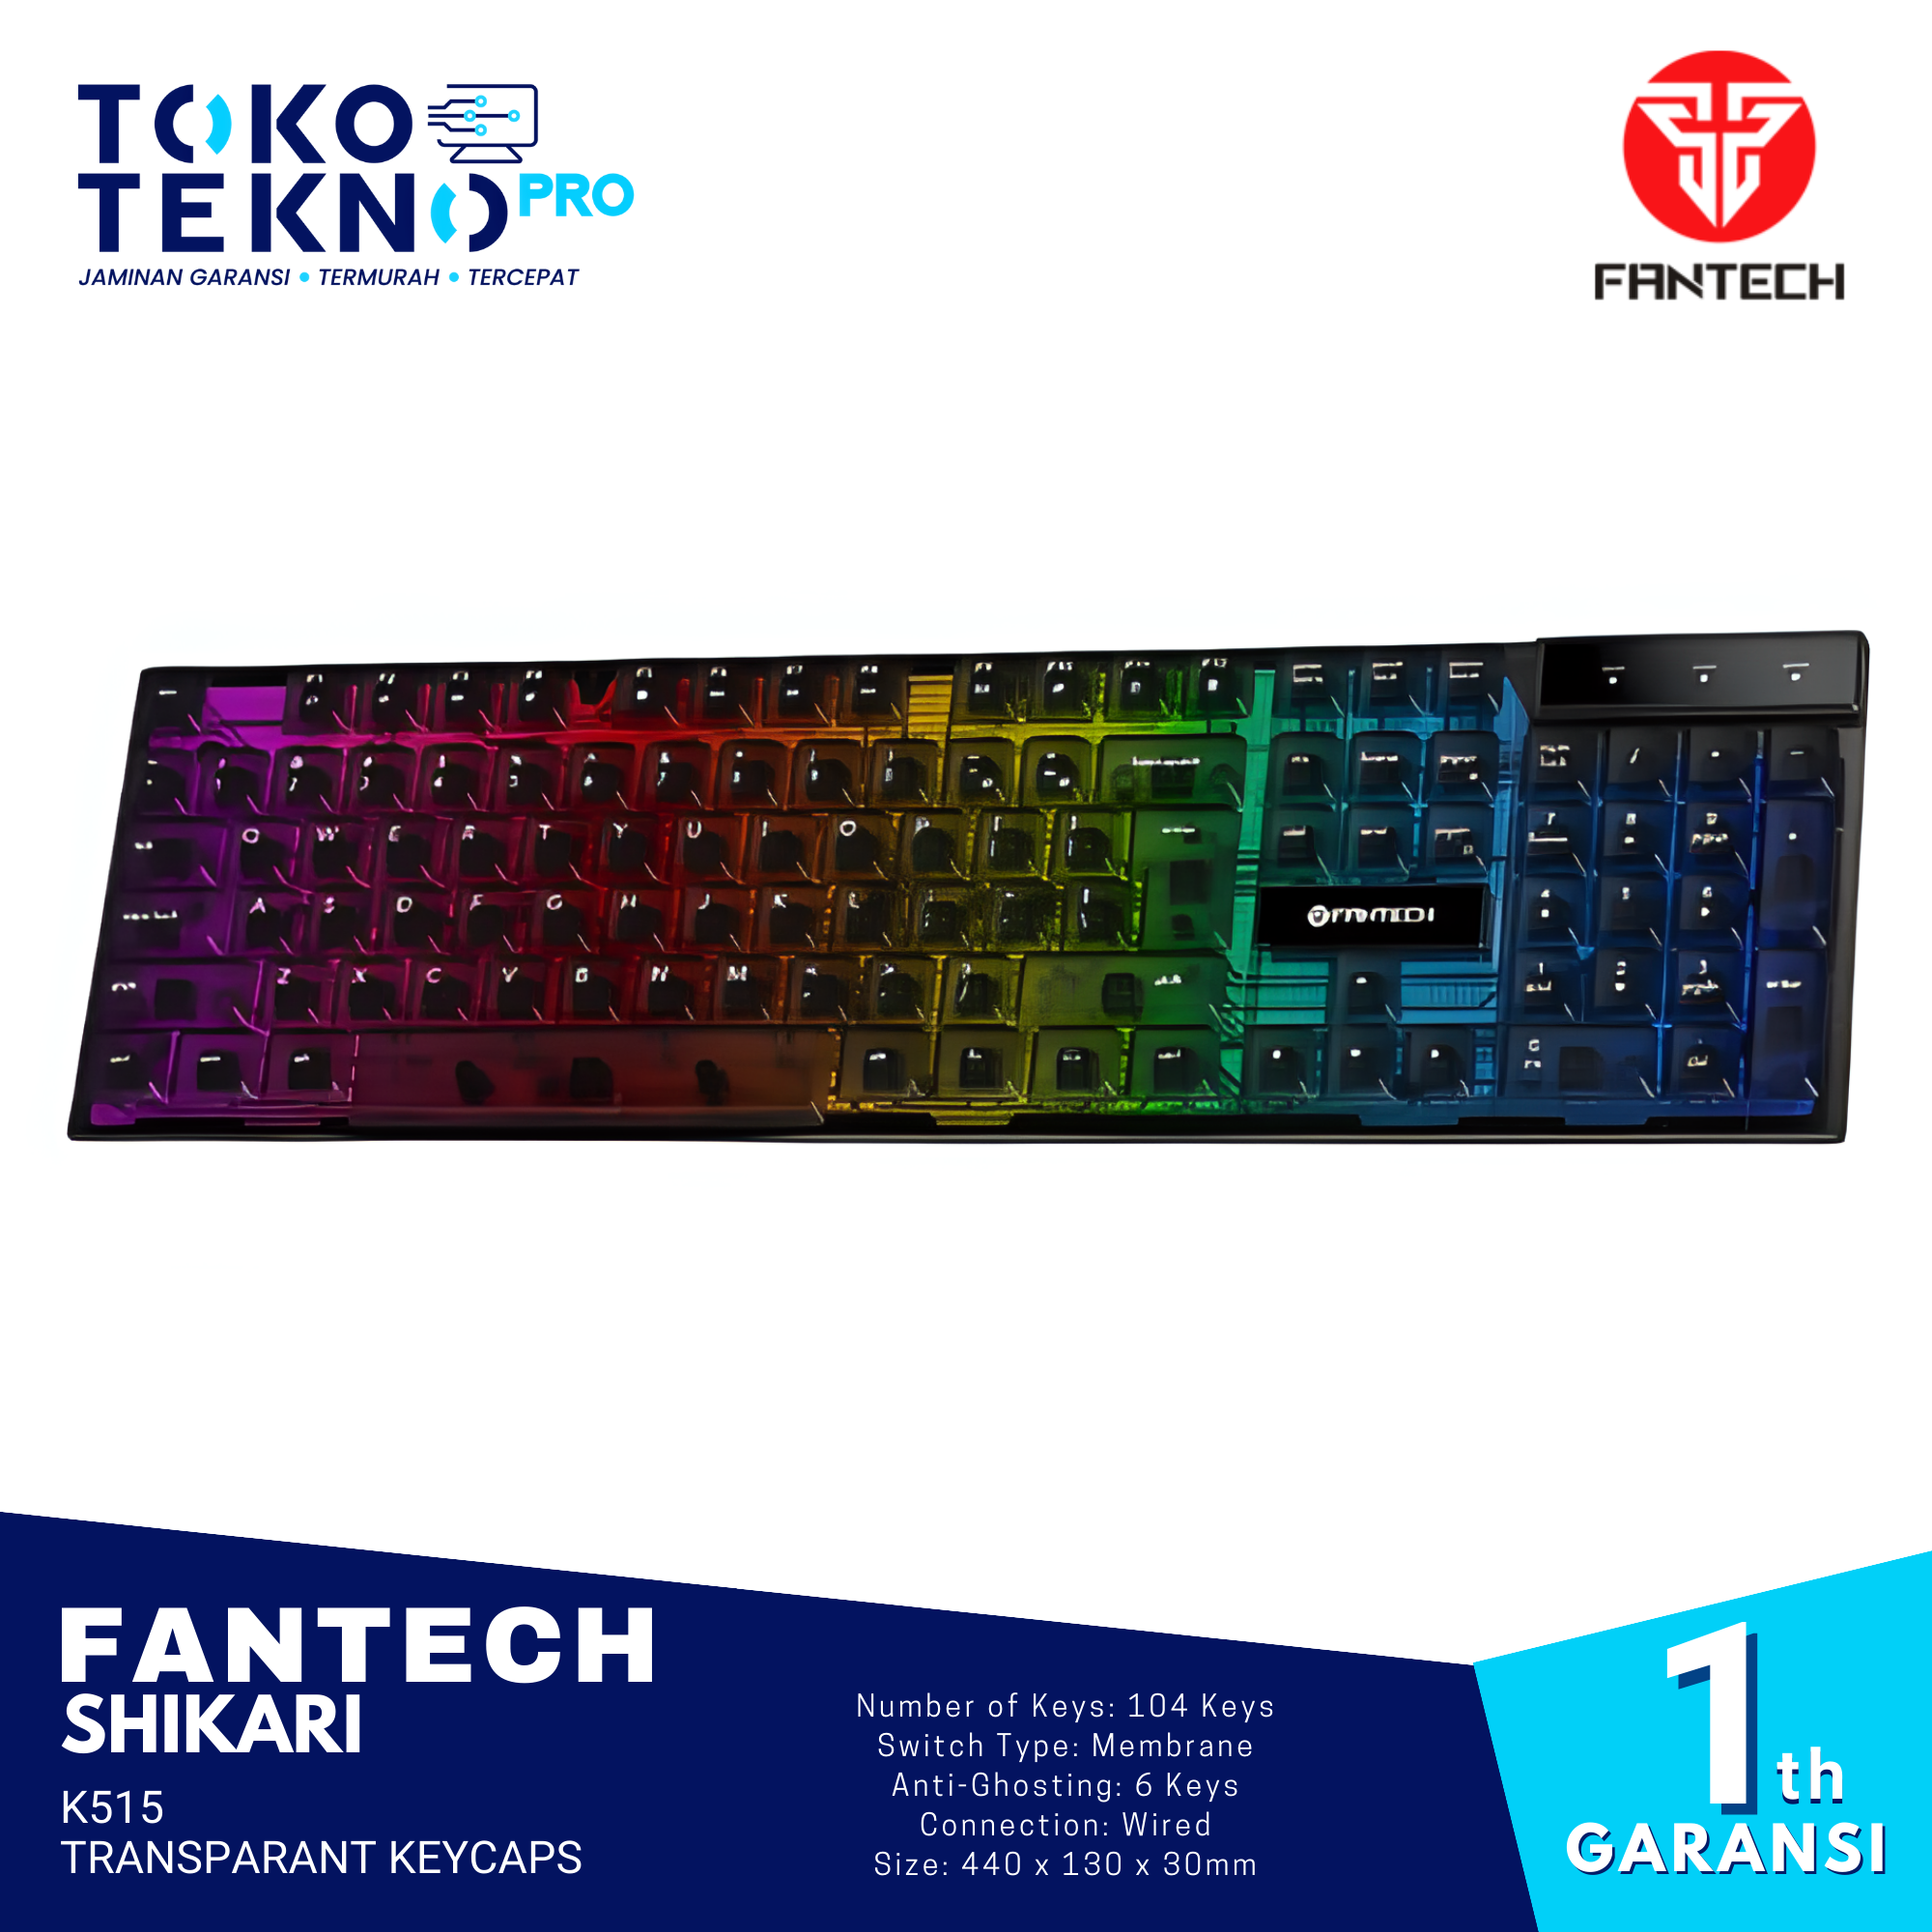 Fantech Shikari K515 Transparant Keycaps Gaming Keyboard